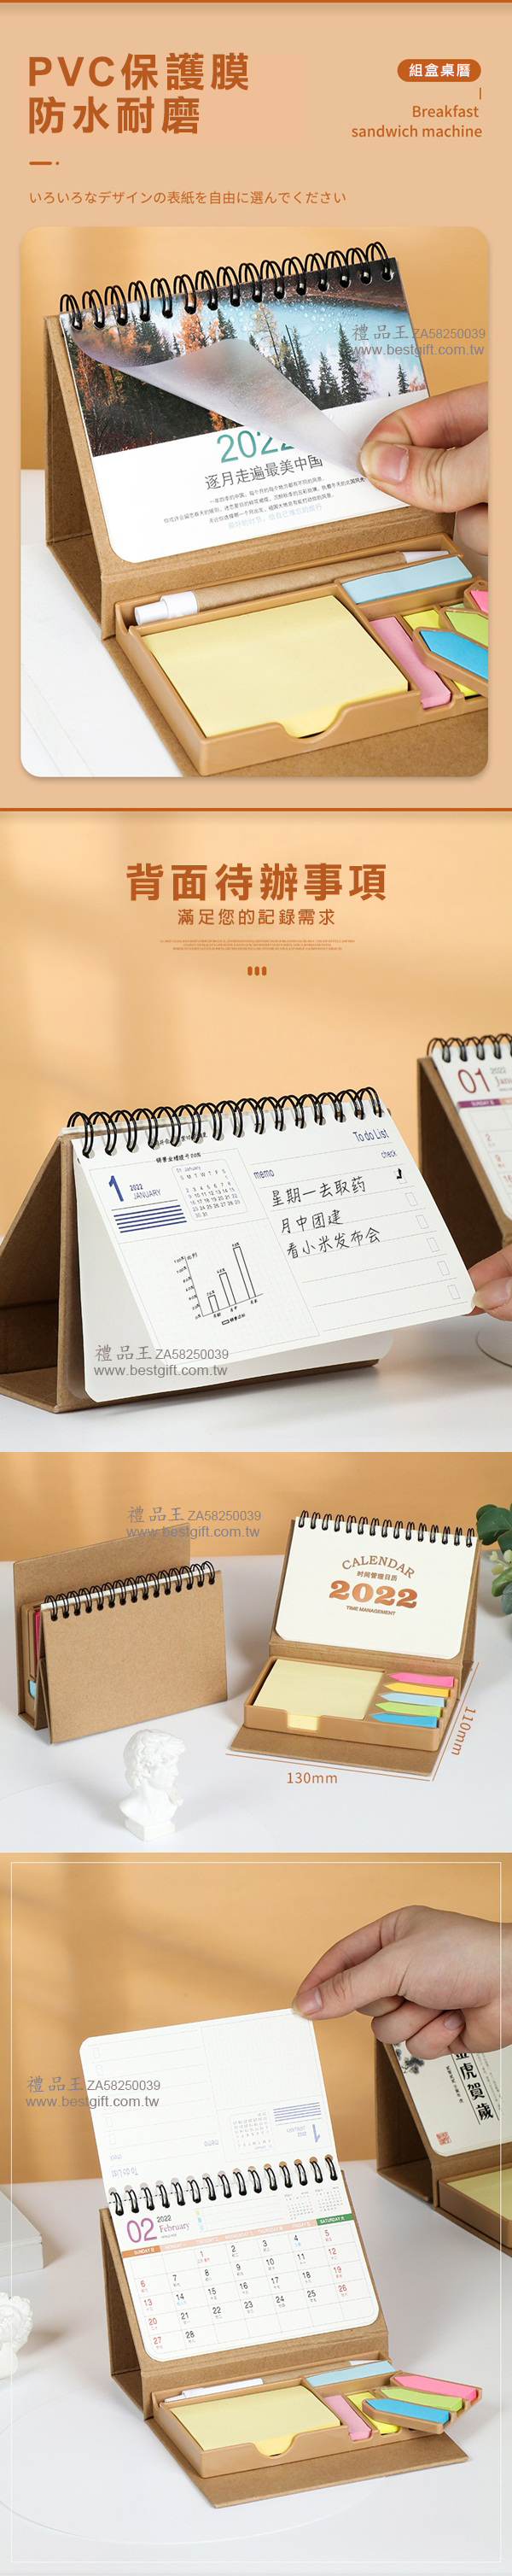 三角桌曆月曆便利貼盒   商品貨號: ZA58250039  